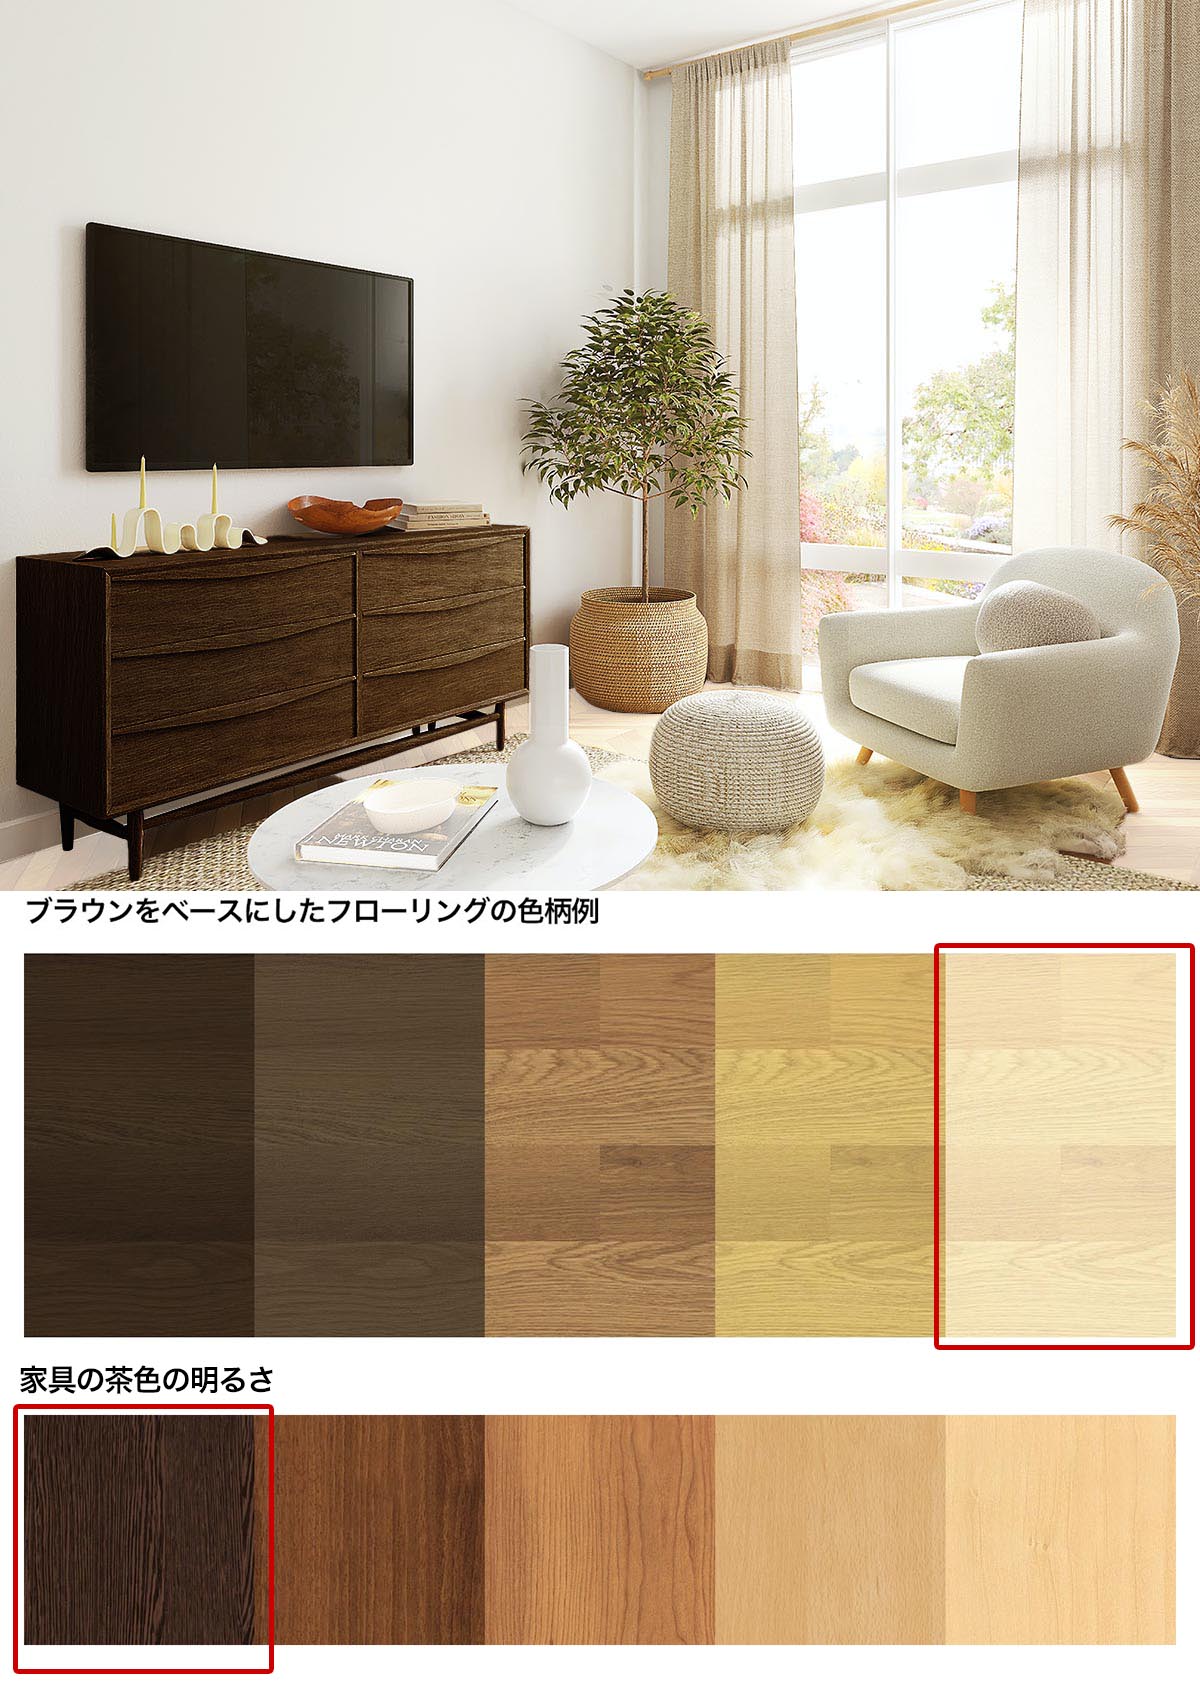 白い床と黒っぽい茶色の家具